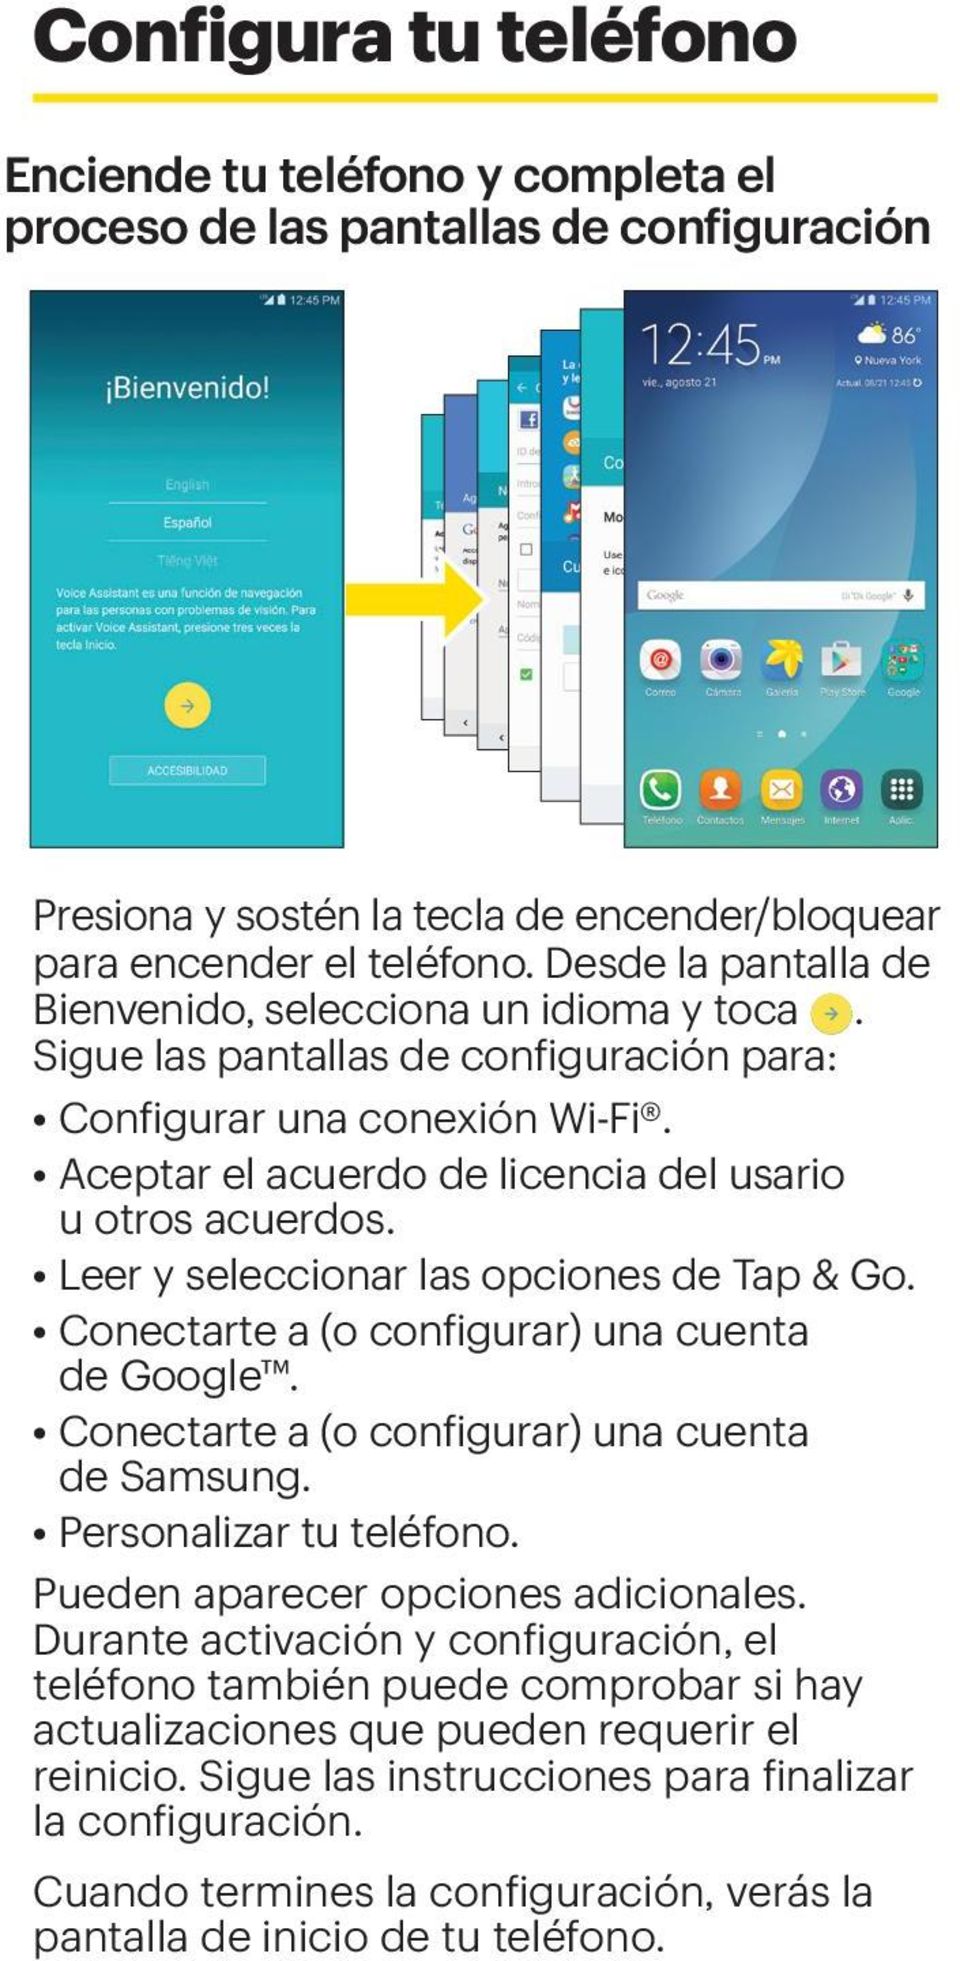 Leer y seleccionar las opciones de Tap & Go. Conectarte a (o configurar) una cuenta de Google. Conectarte a (o configurar) una cuenta de Samsung. Personalizar tu teléfono.